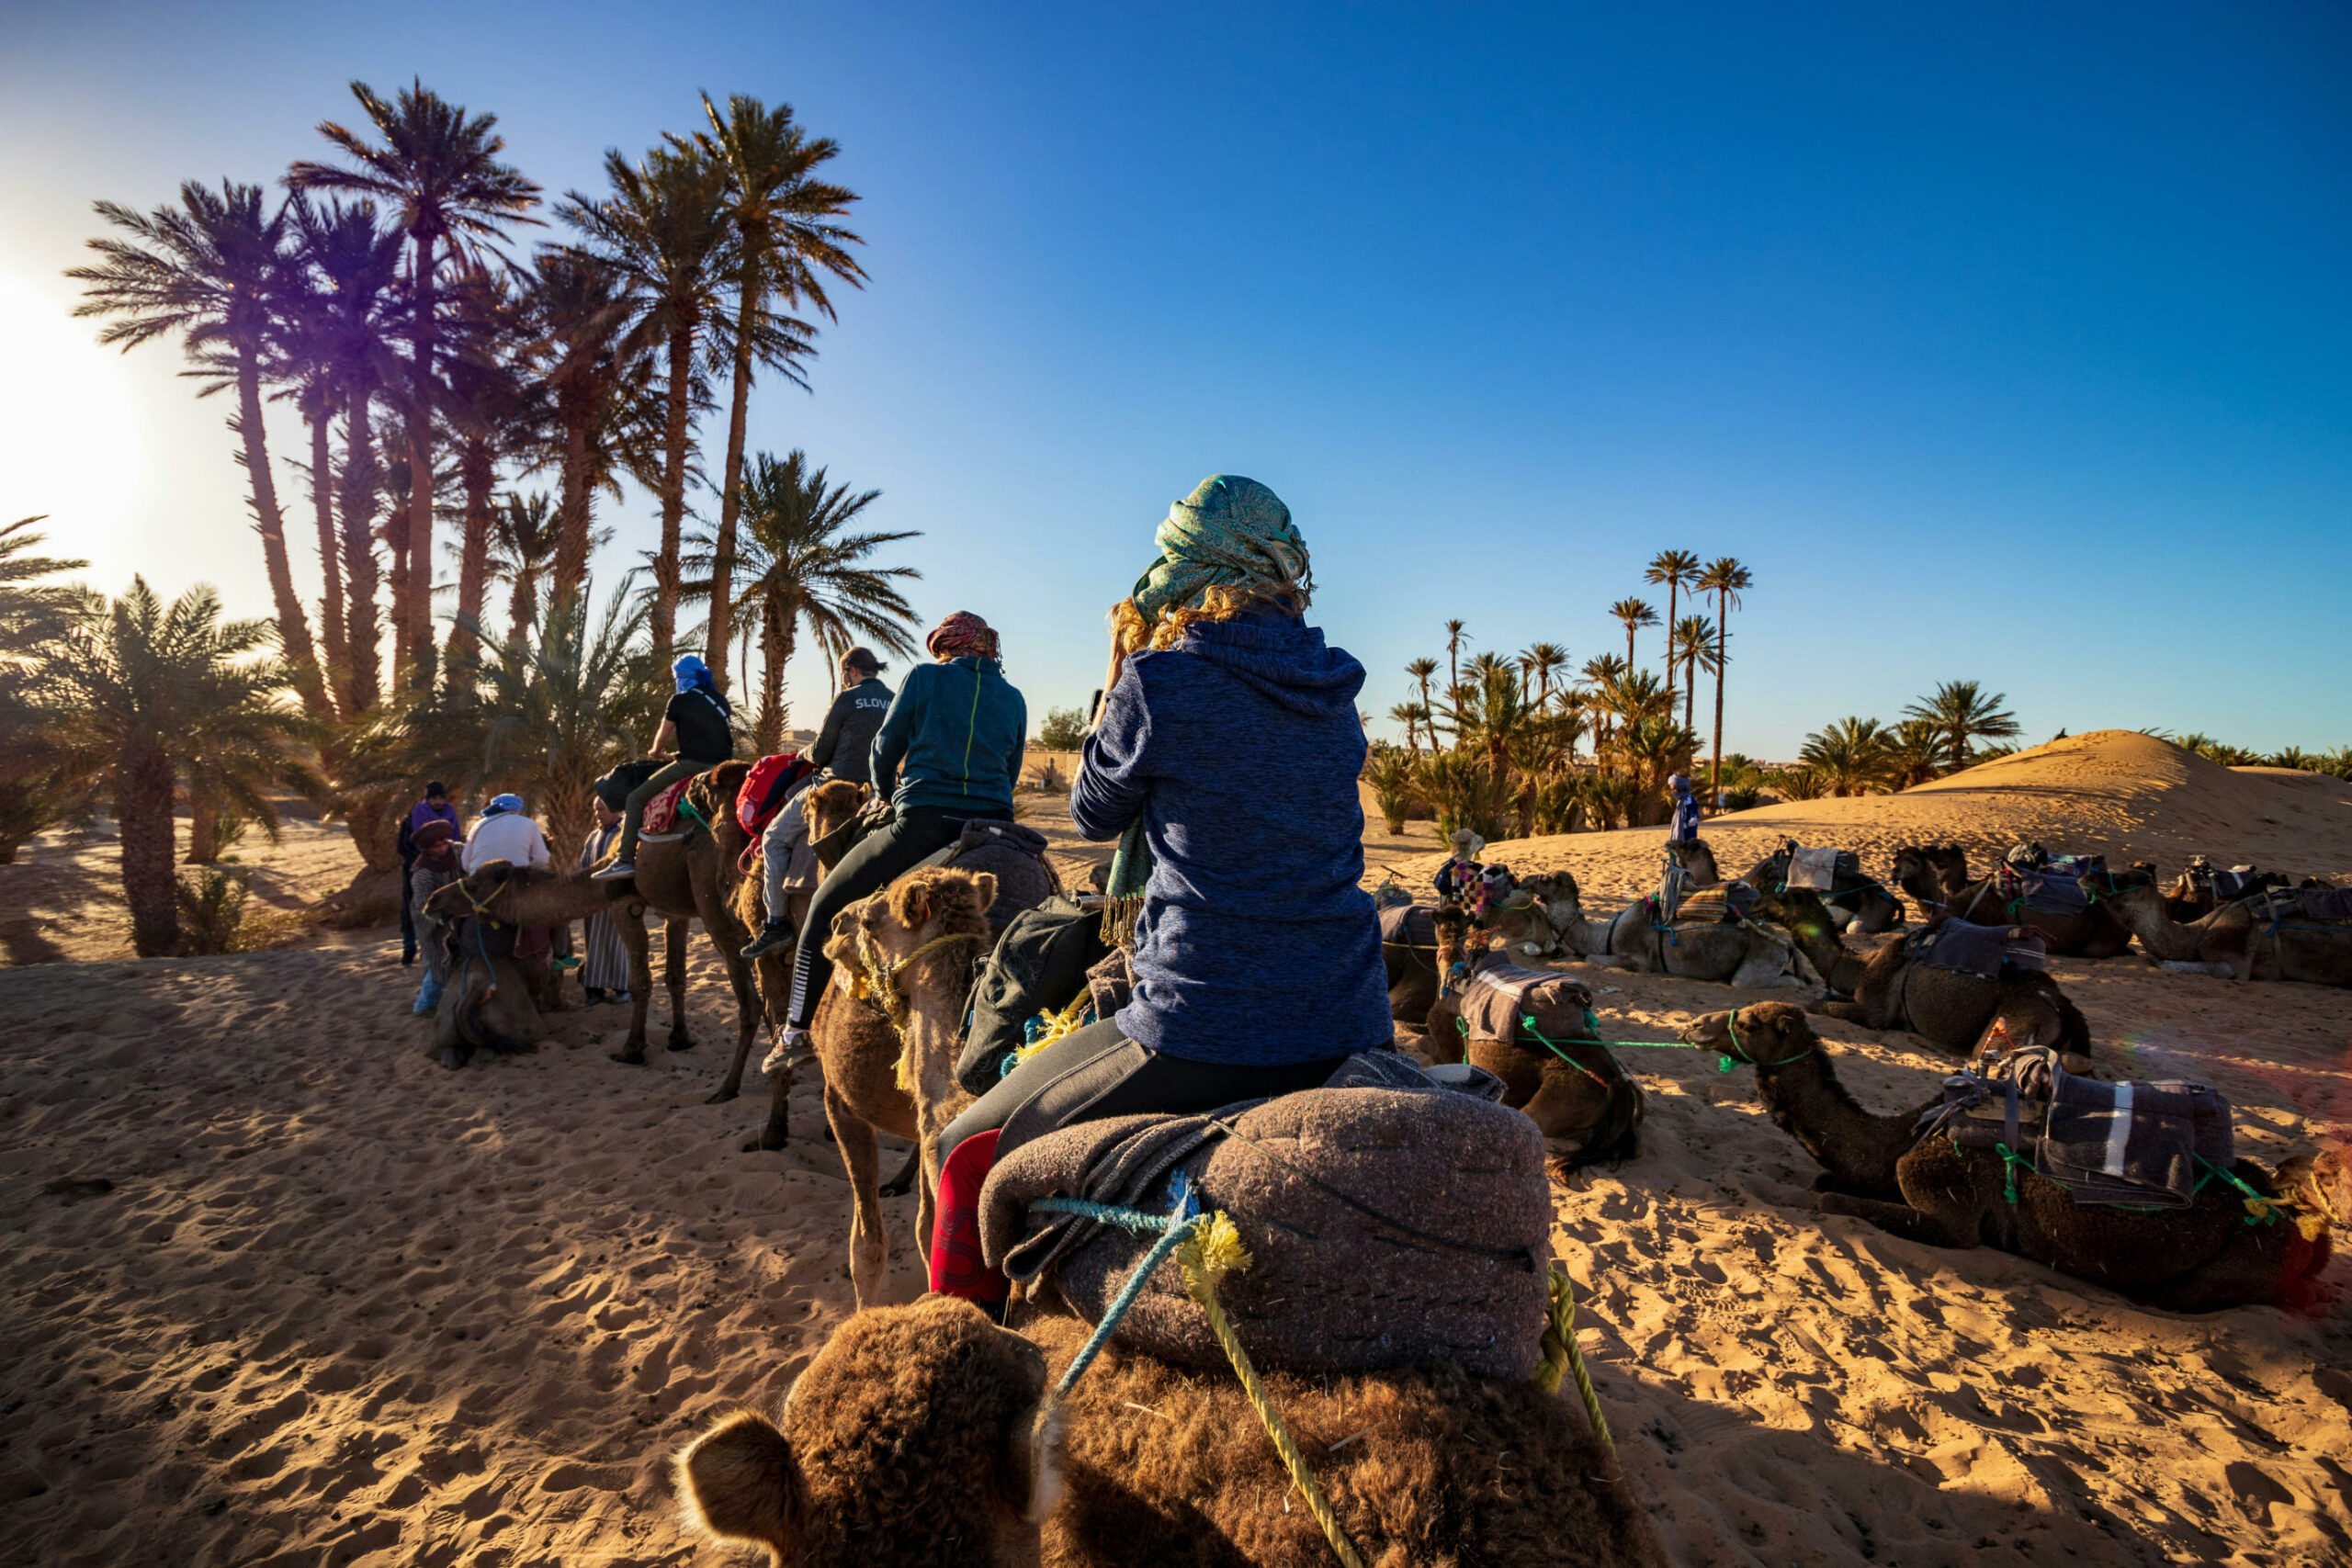 Das Bild zeigt einen Karavan in der Wüste. Im Hintergrund stehen einige Palmen. Im Vordergrund stehen und liegen viele Kamele, die mit Stricken in Reihen aneinander gebunden sind. Auf den Rücken einiger Kamele sitzen Menschen mit Stoffturbanen auf dem Kopf. Es scheint so, als ob sie eine Kameltour unternehmen.